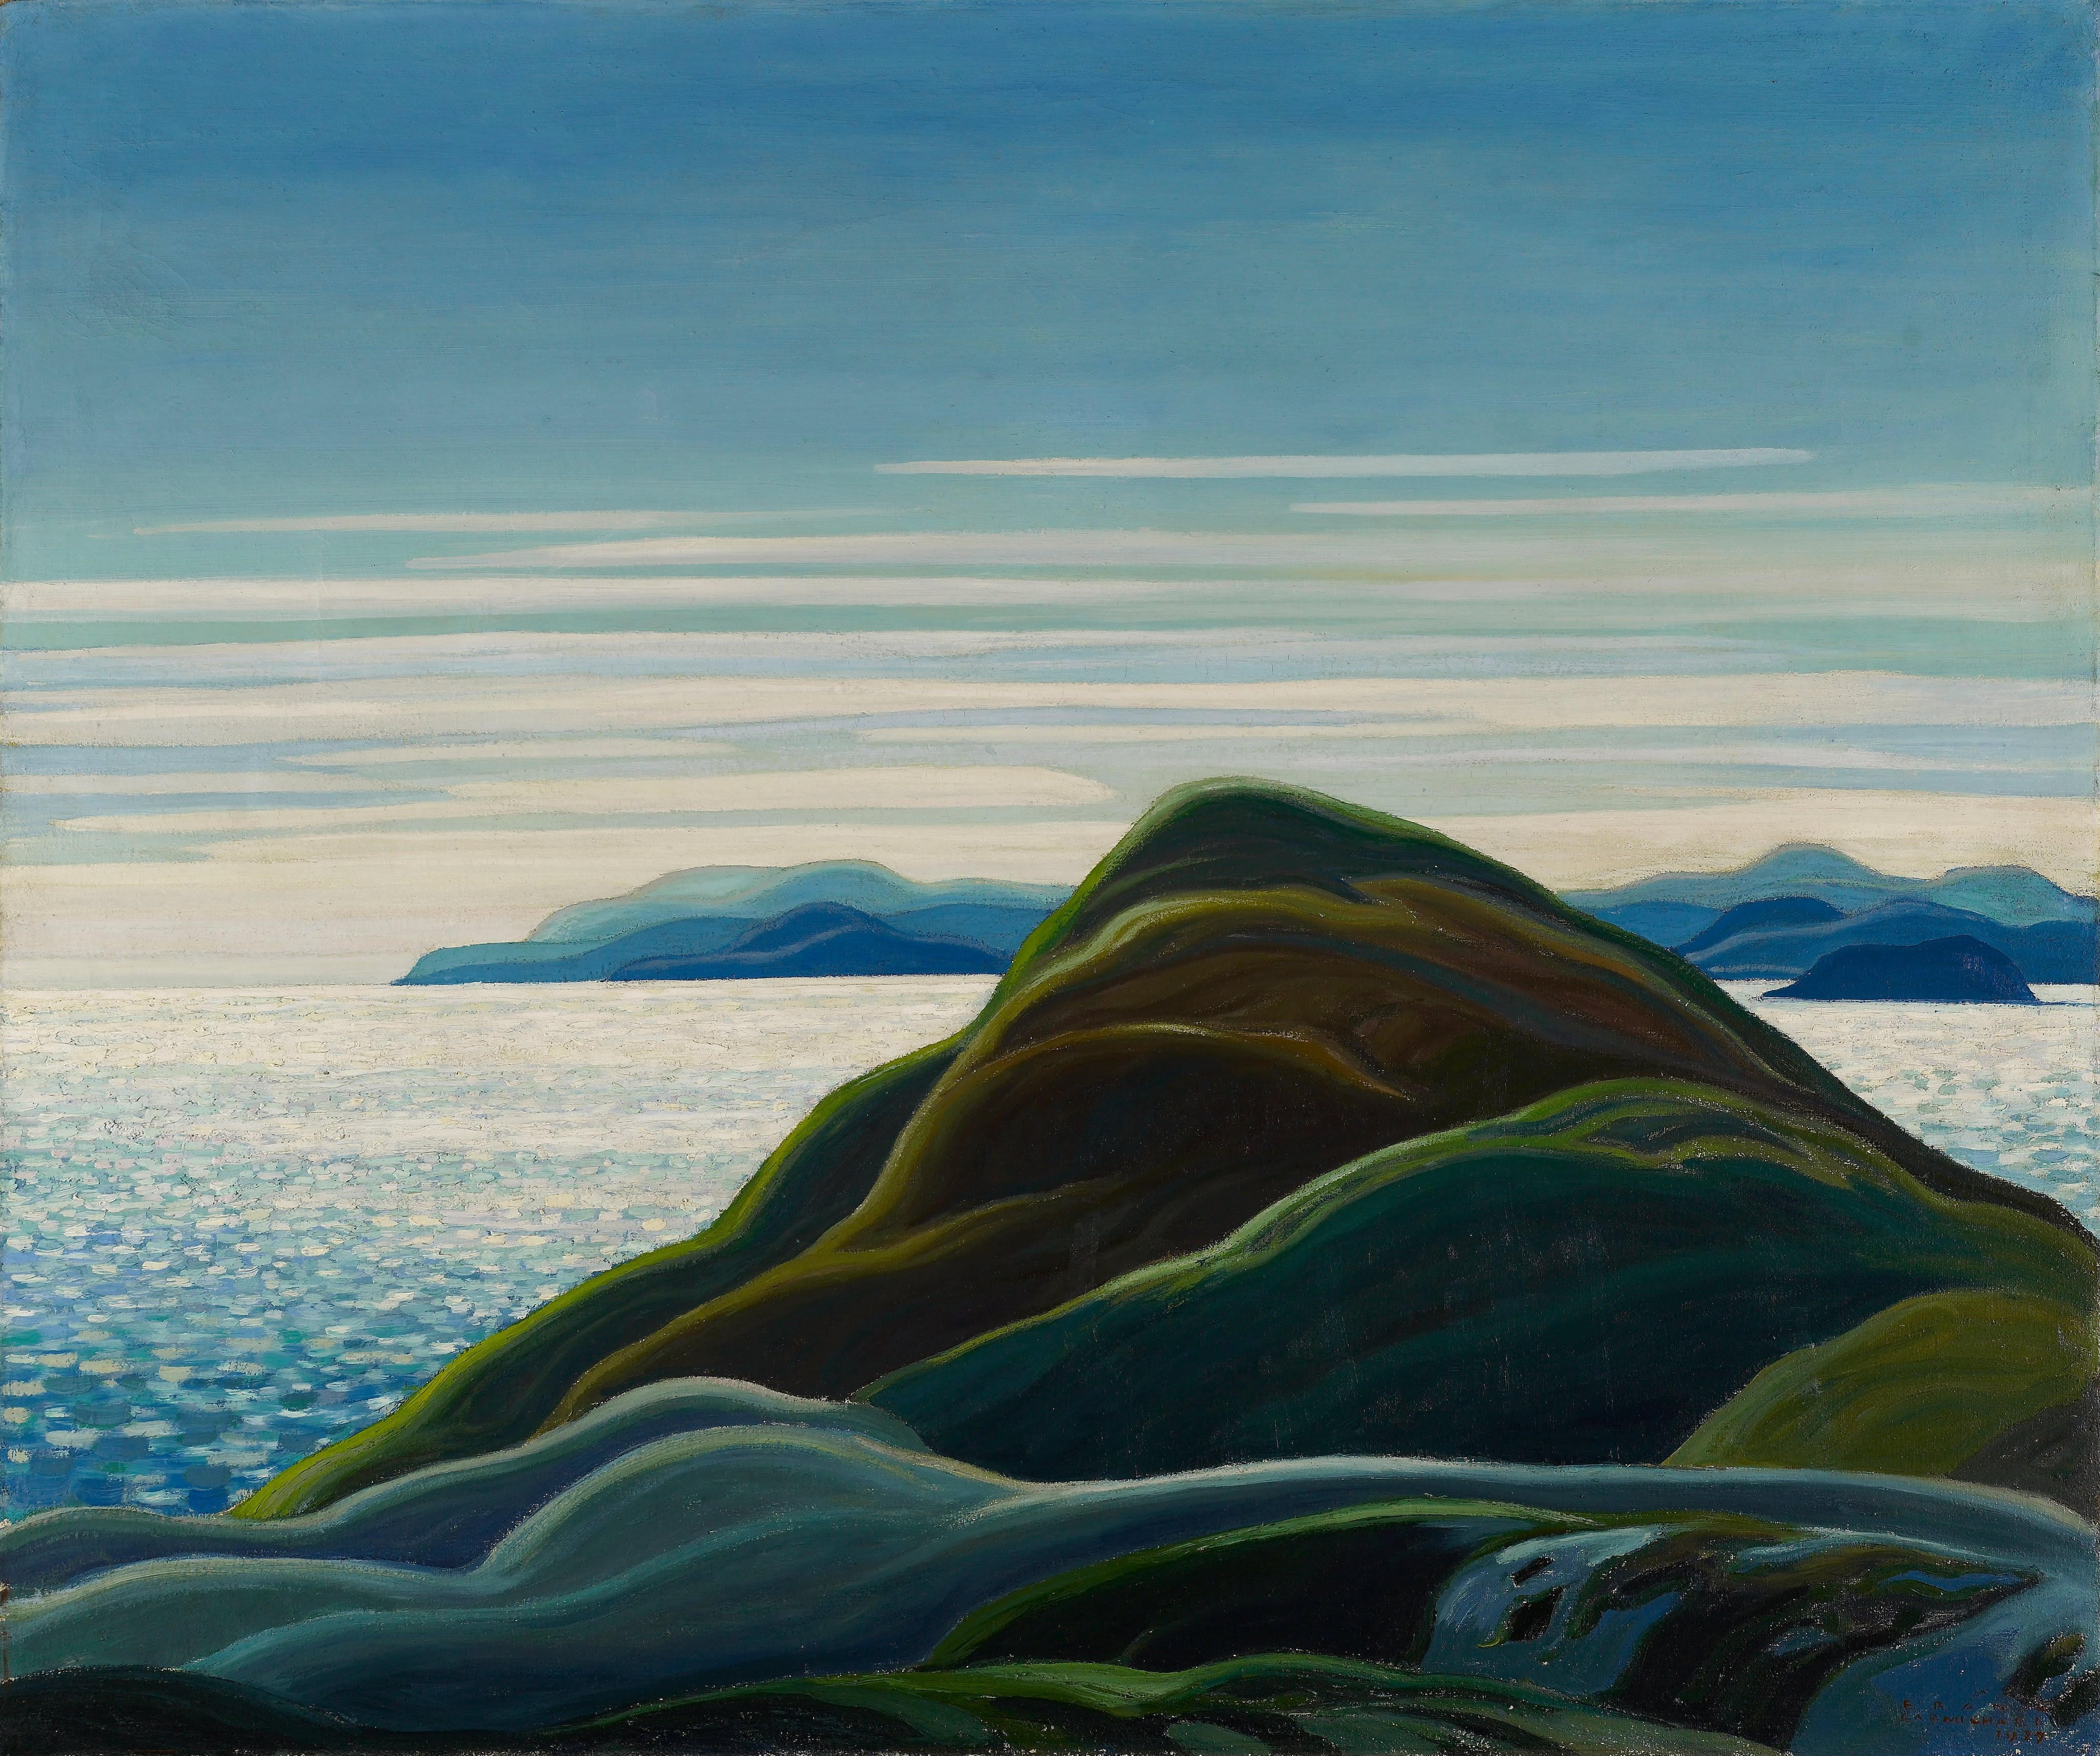 Северна обала, Горње Језеро by Franklin Carmichael - 1927. - 122.5 x 102.8 cm 